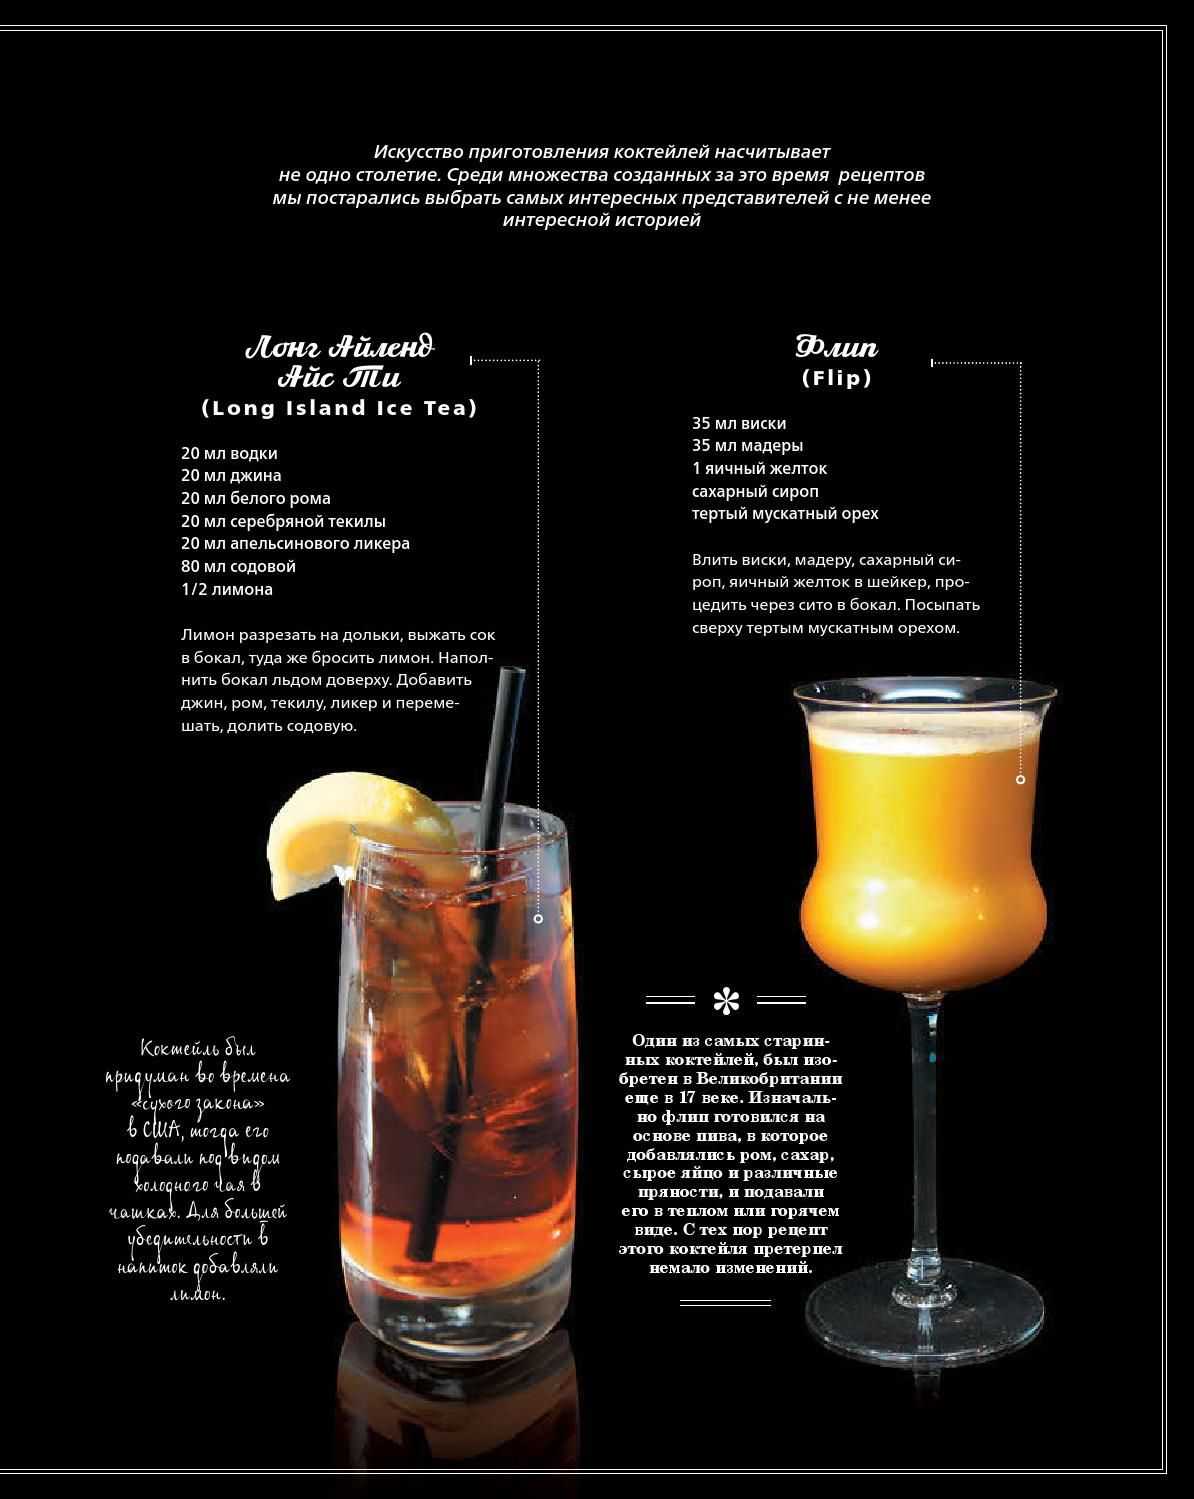 Яичный напиток «адвокат» на спиртовой основе. рецепты коктейлей с ликером